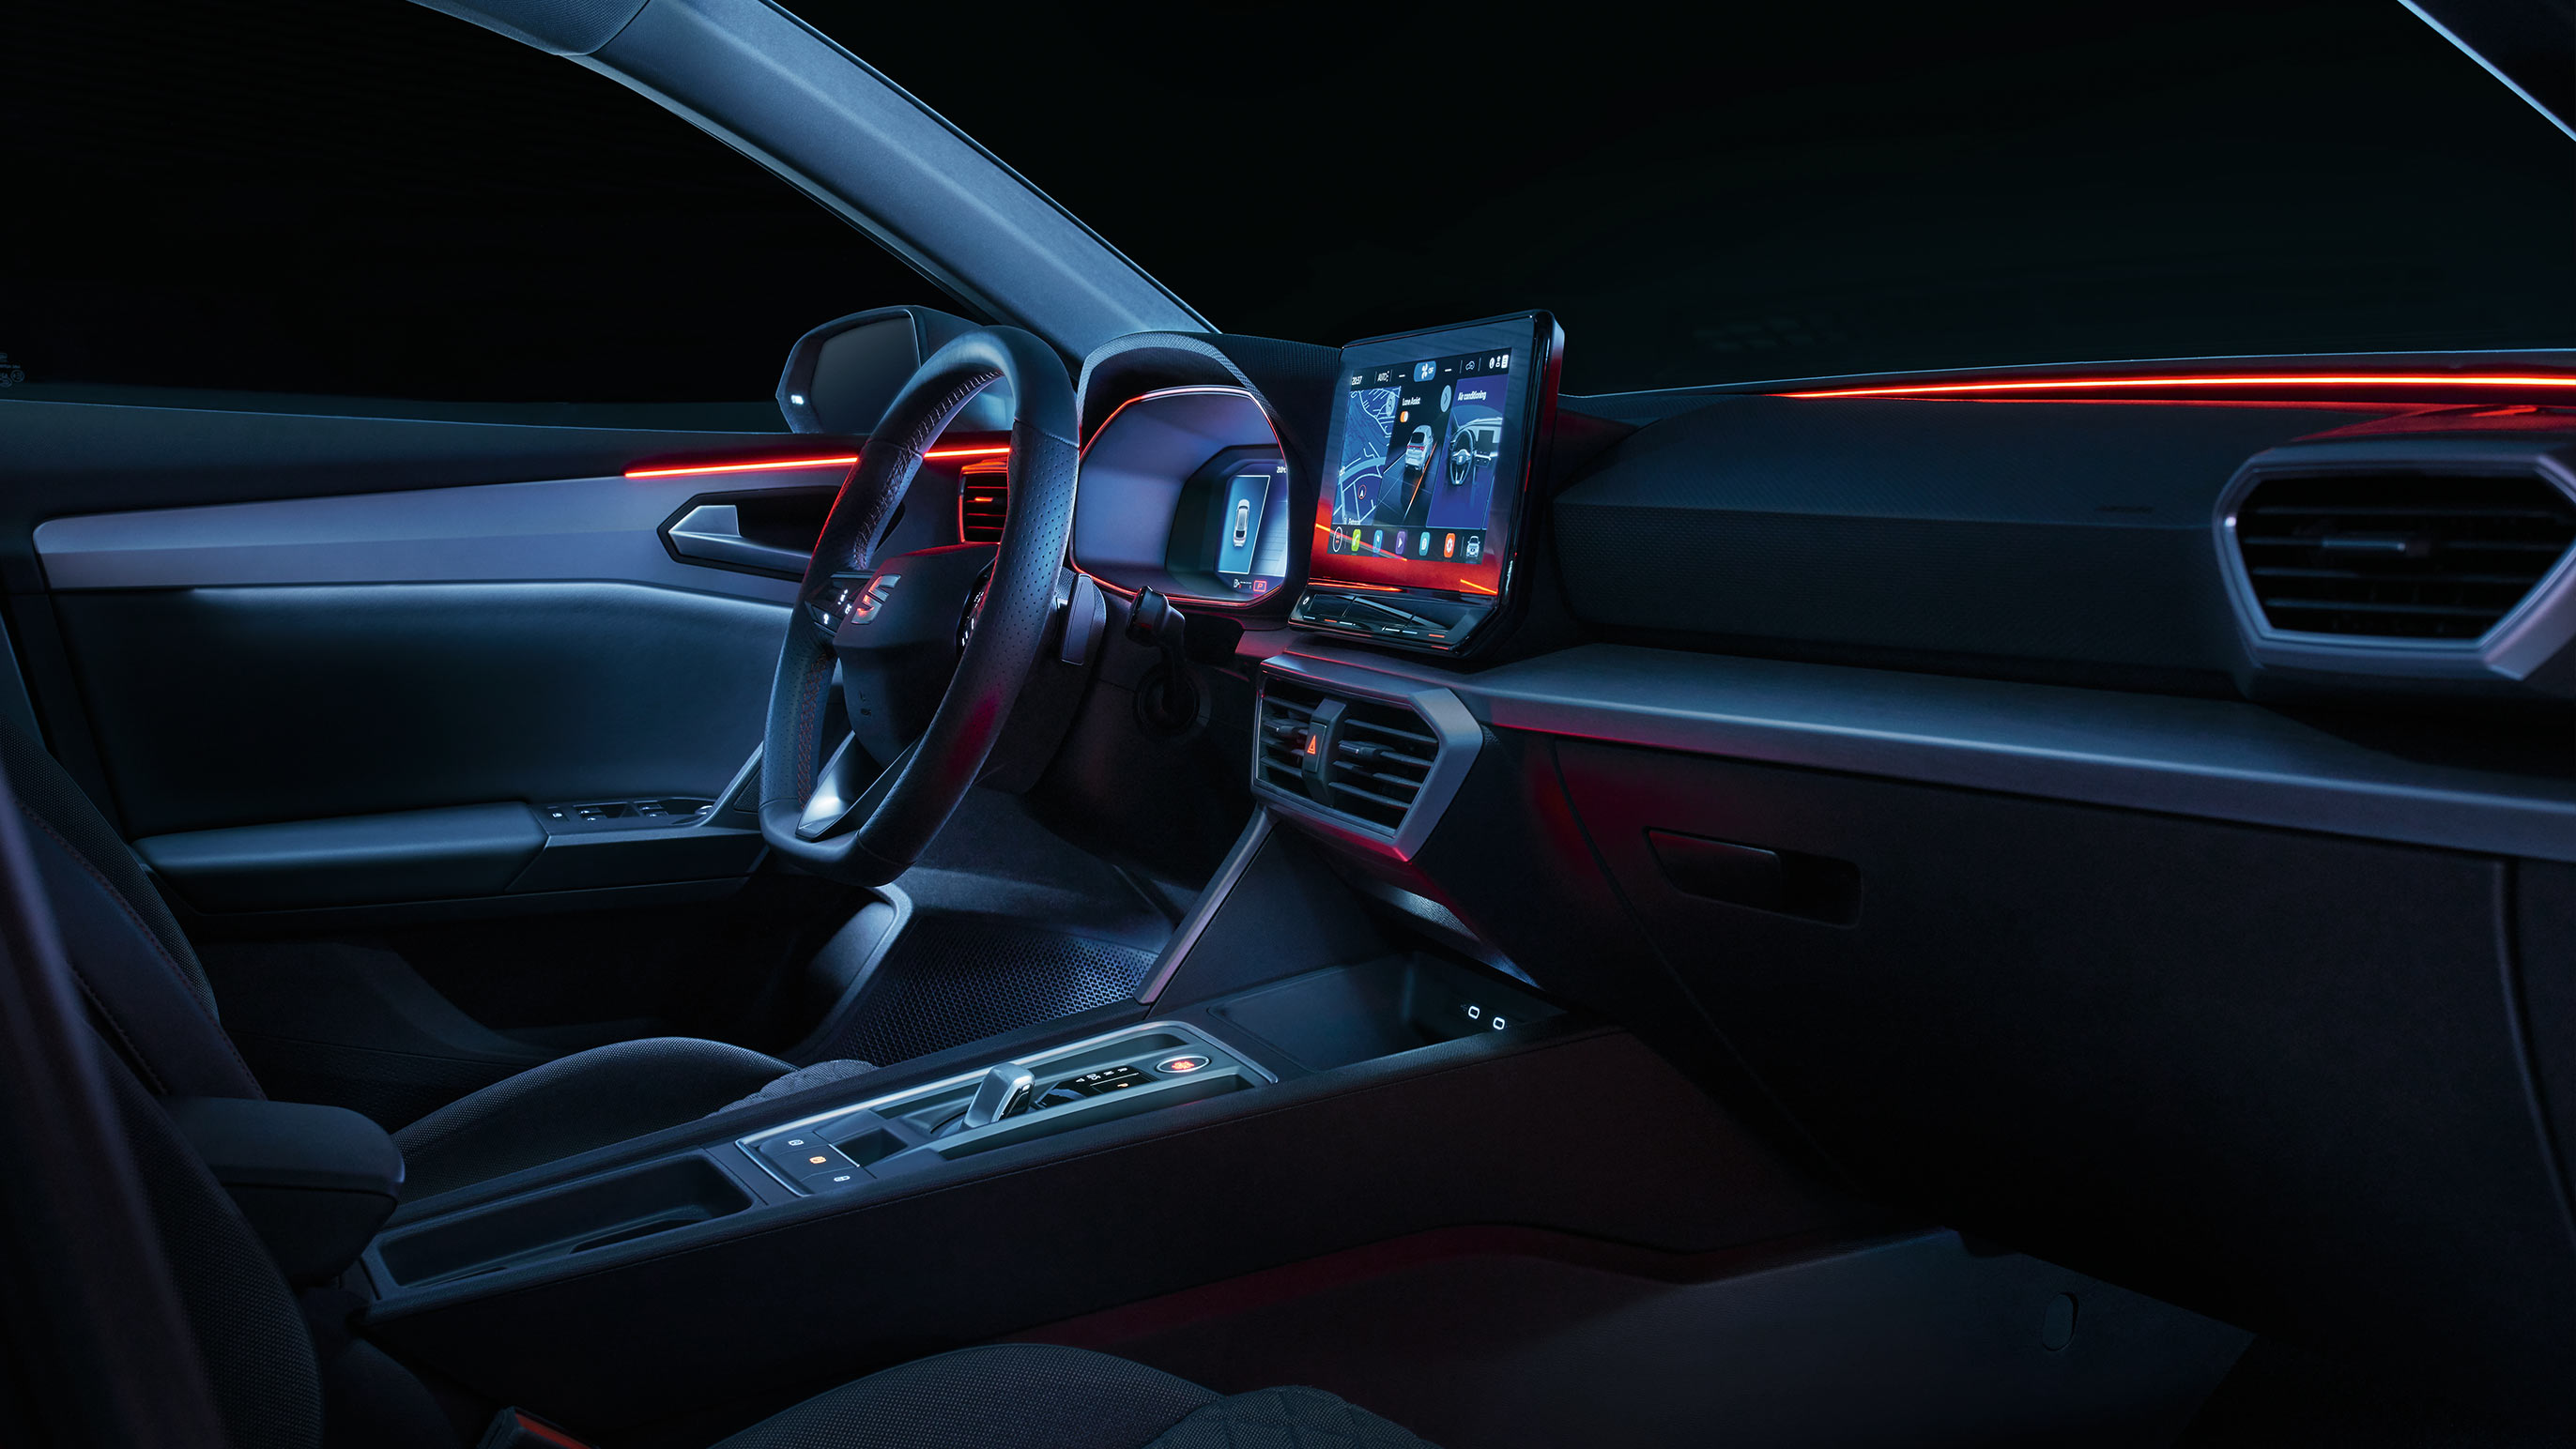 vista interior del salpicadero y luz ambiental del SEAT León Xcellence